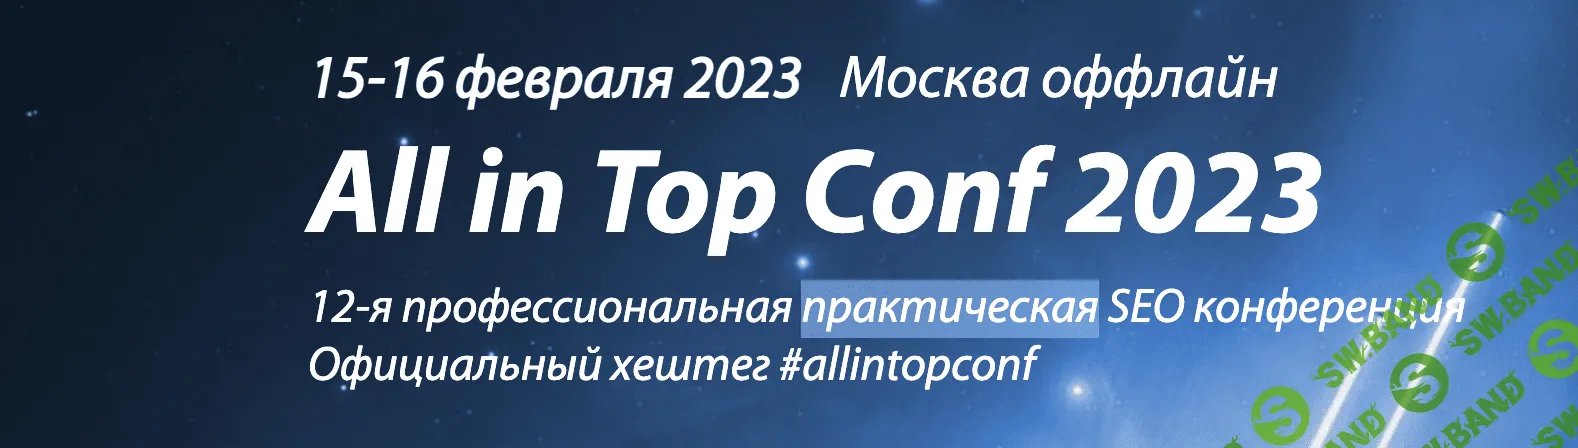 All in Top Conf 2023 - профессиональная практическая SEO-конференция (2023)